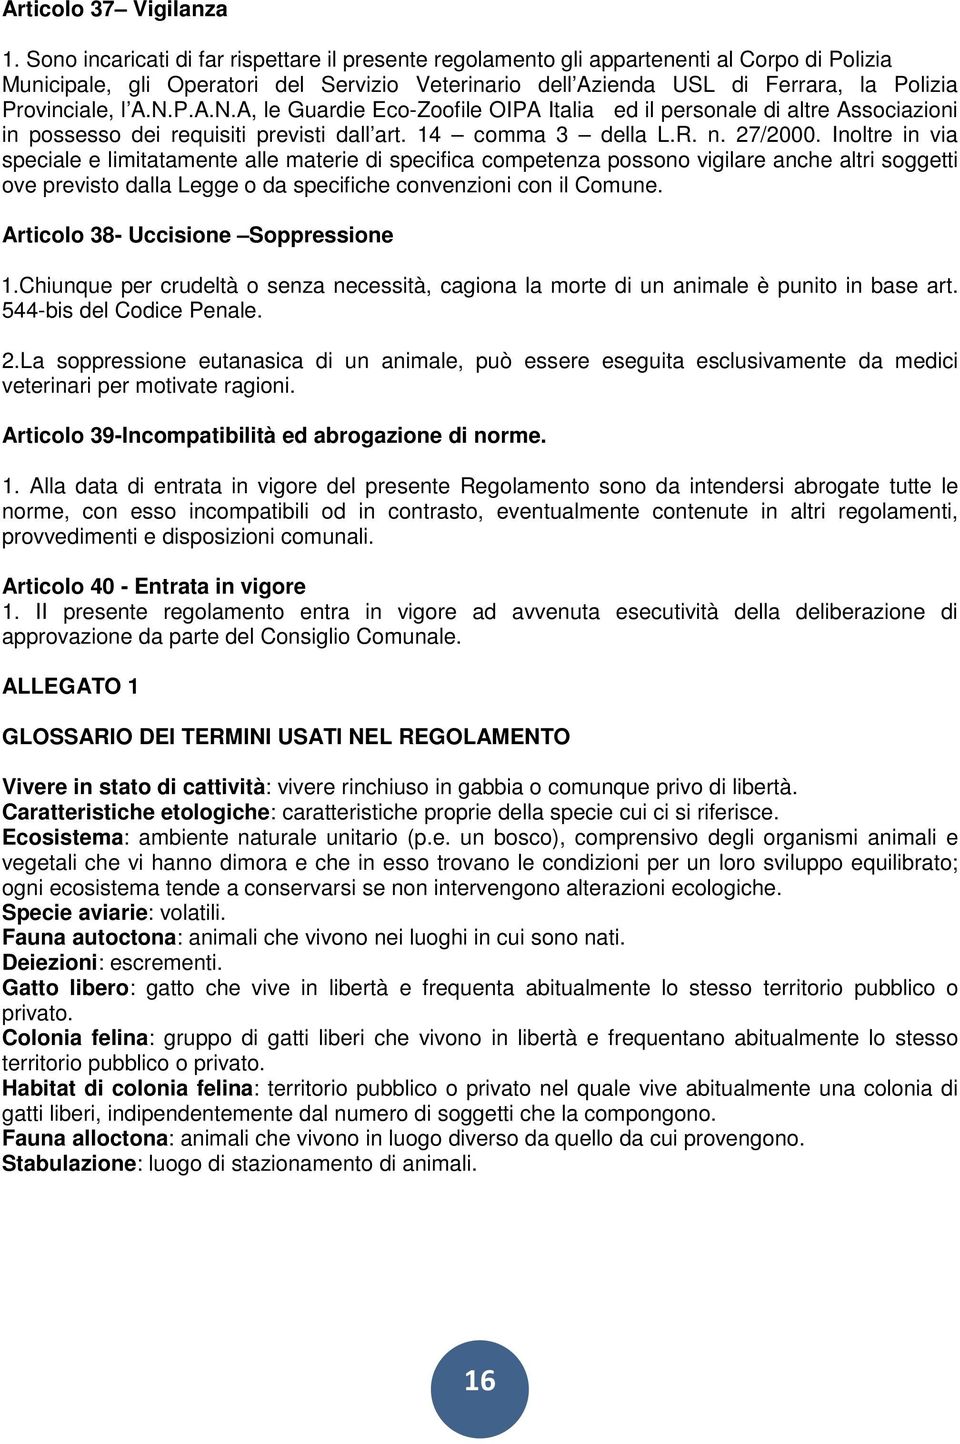 l A.N.P.A.N.A, le Guardie Eco-Zoofile OIPA Italia ed il personale di altre Associazioni in possesso dei requisiti previsti dall art. 14 comma 3 della L.R. n. 27/2000.